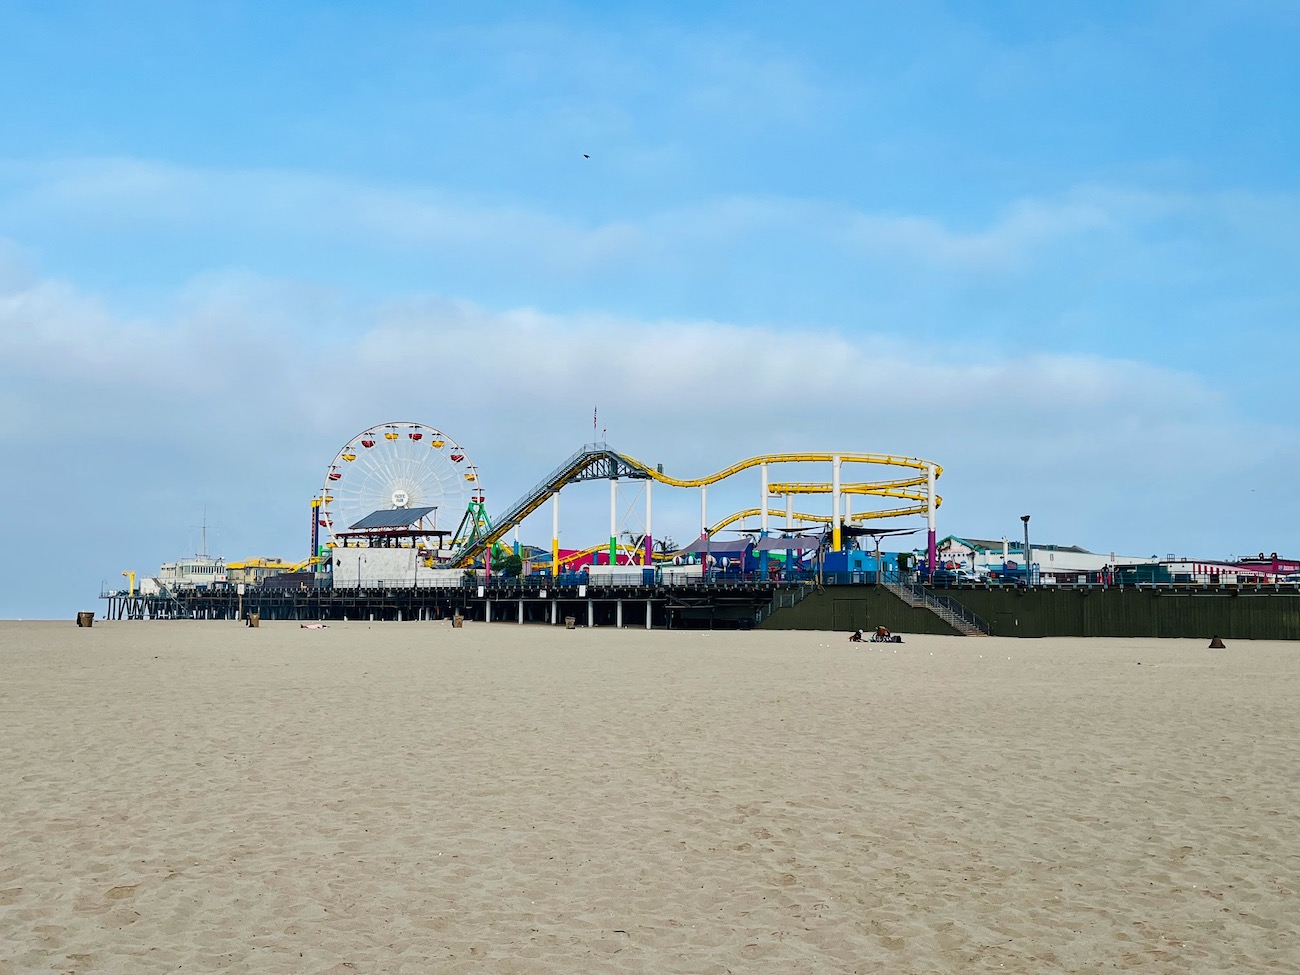 Los Angeles mit Kindern - Das Santa Monica Pier mit seinem Vergnügungspark